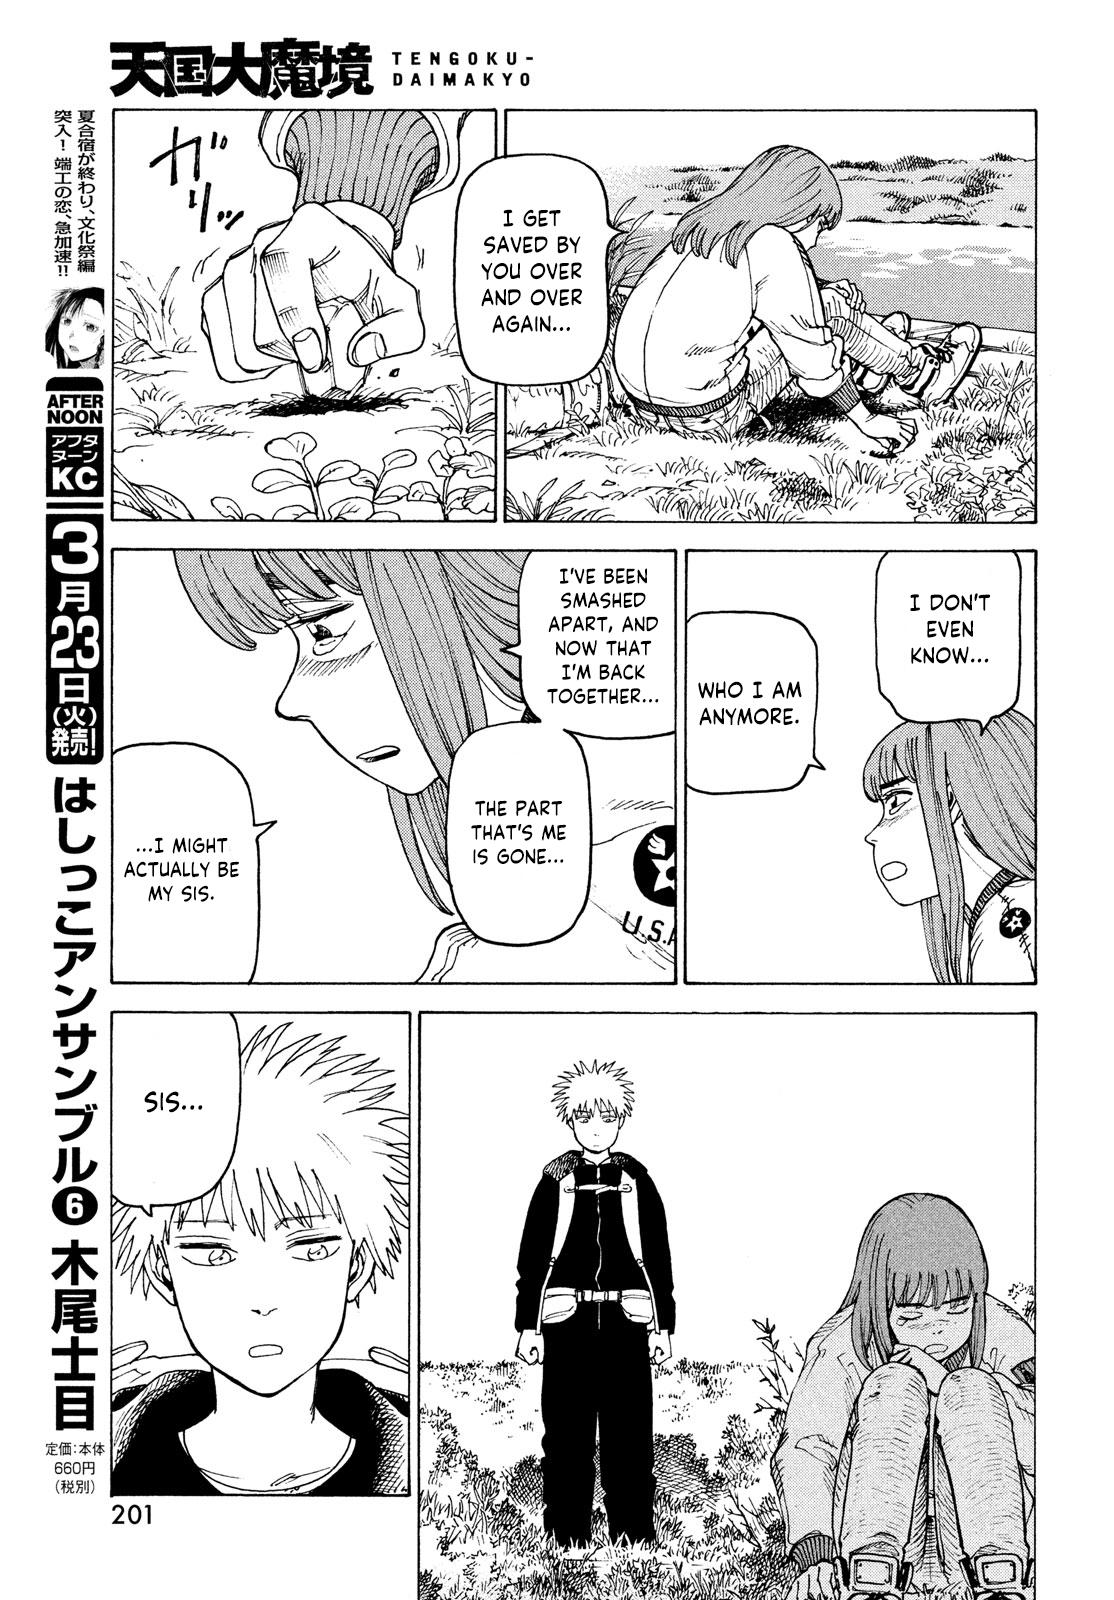 Tengoku Daimakyou Chapter 34: Inazaki Robin ➂ page 17 - Mangakakalot